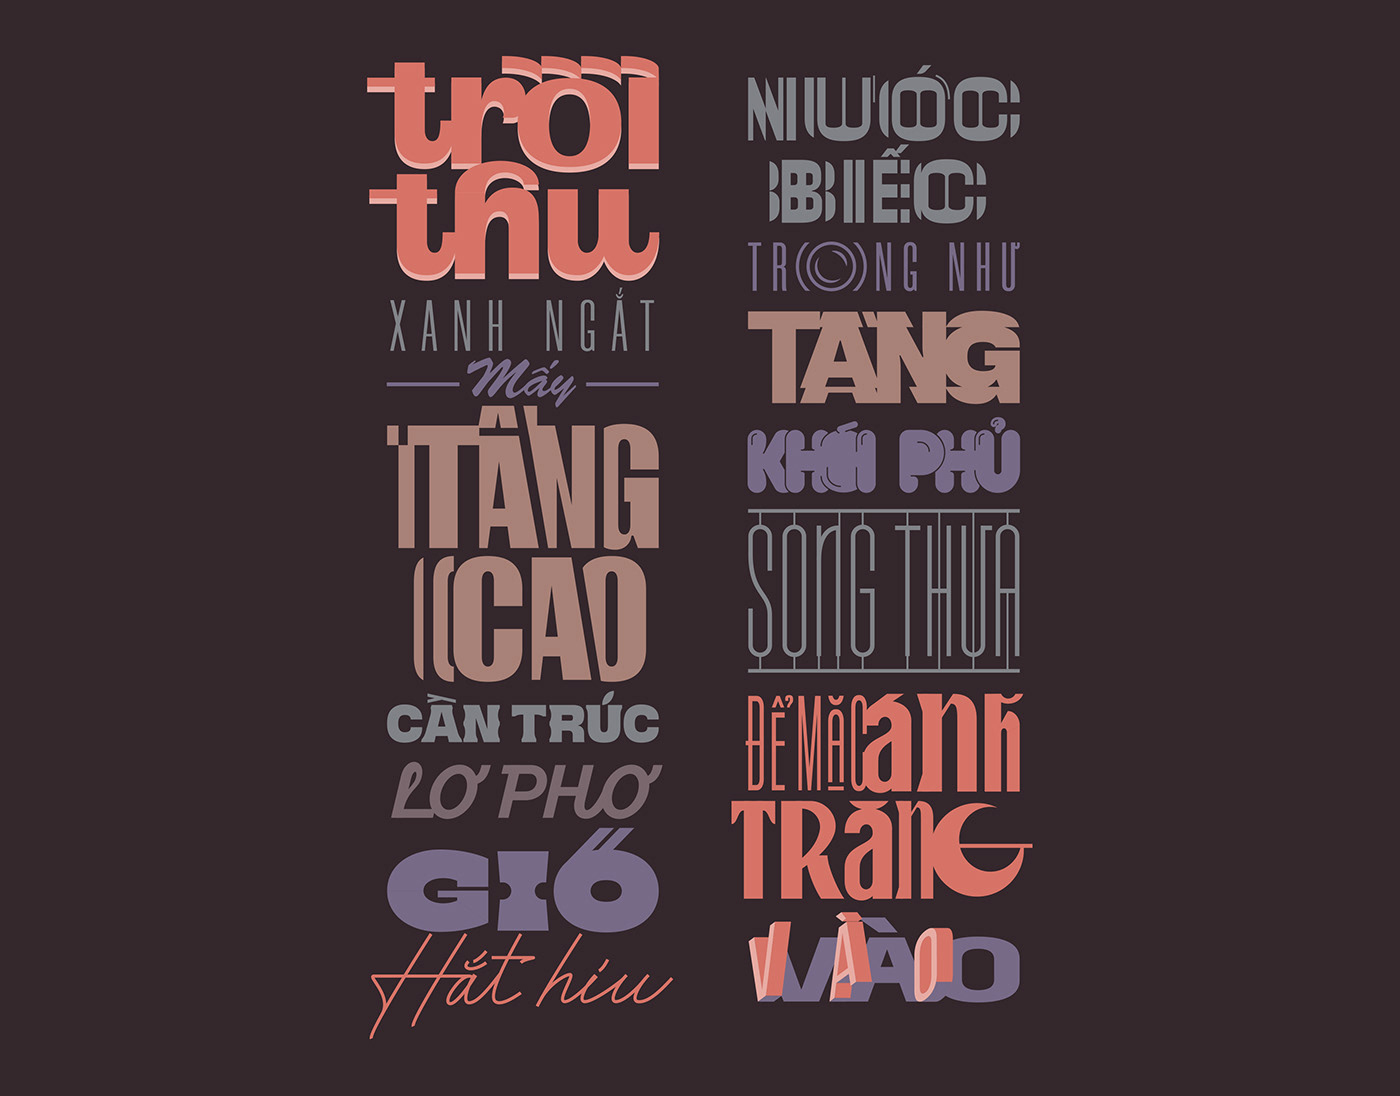 design graphic quote TONbui type design Typeface typography   viet nam vietnam visual graphic